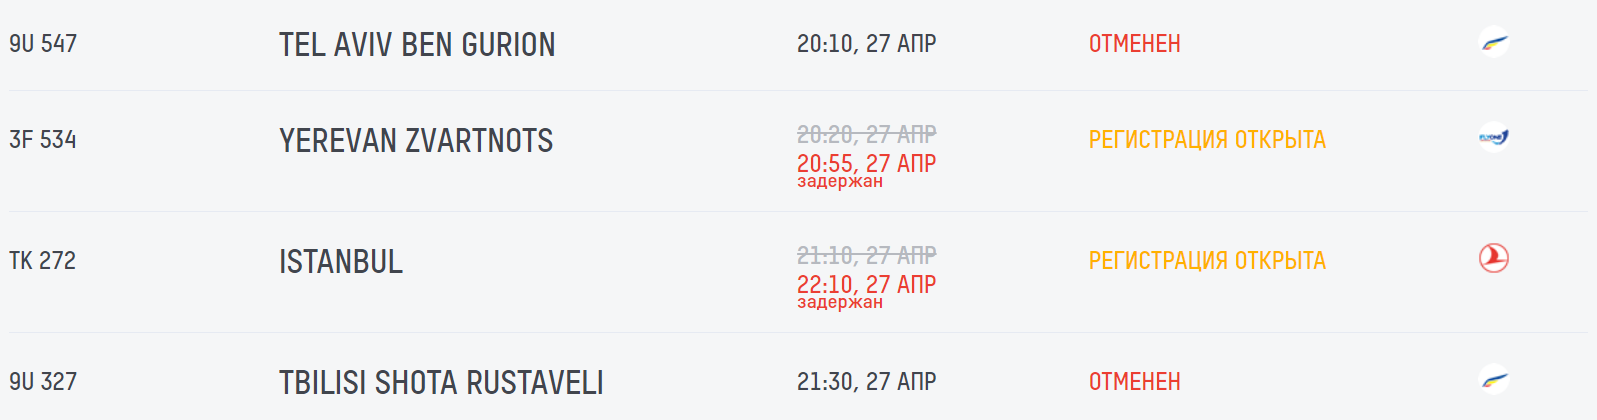 Air Moldova отменила еще несколько рейсов на 27 и 28 апреля